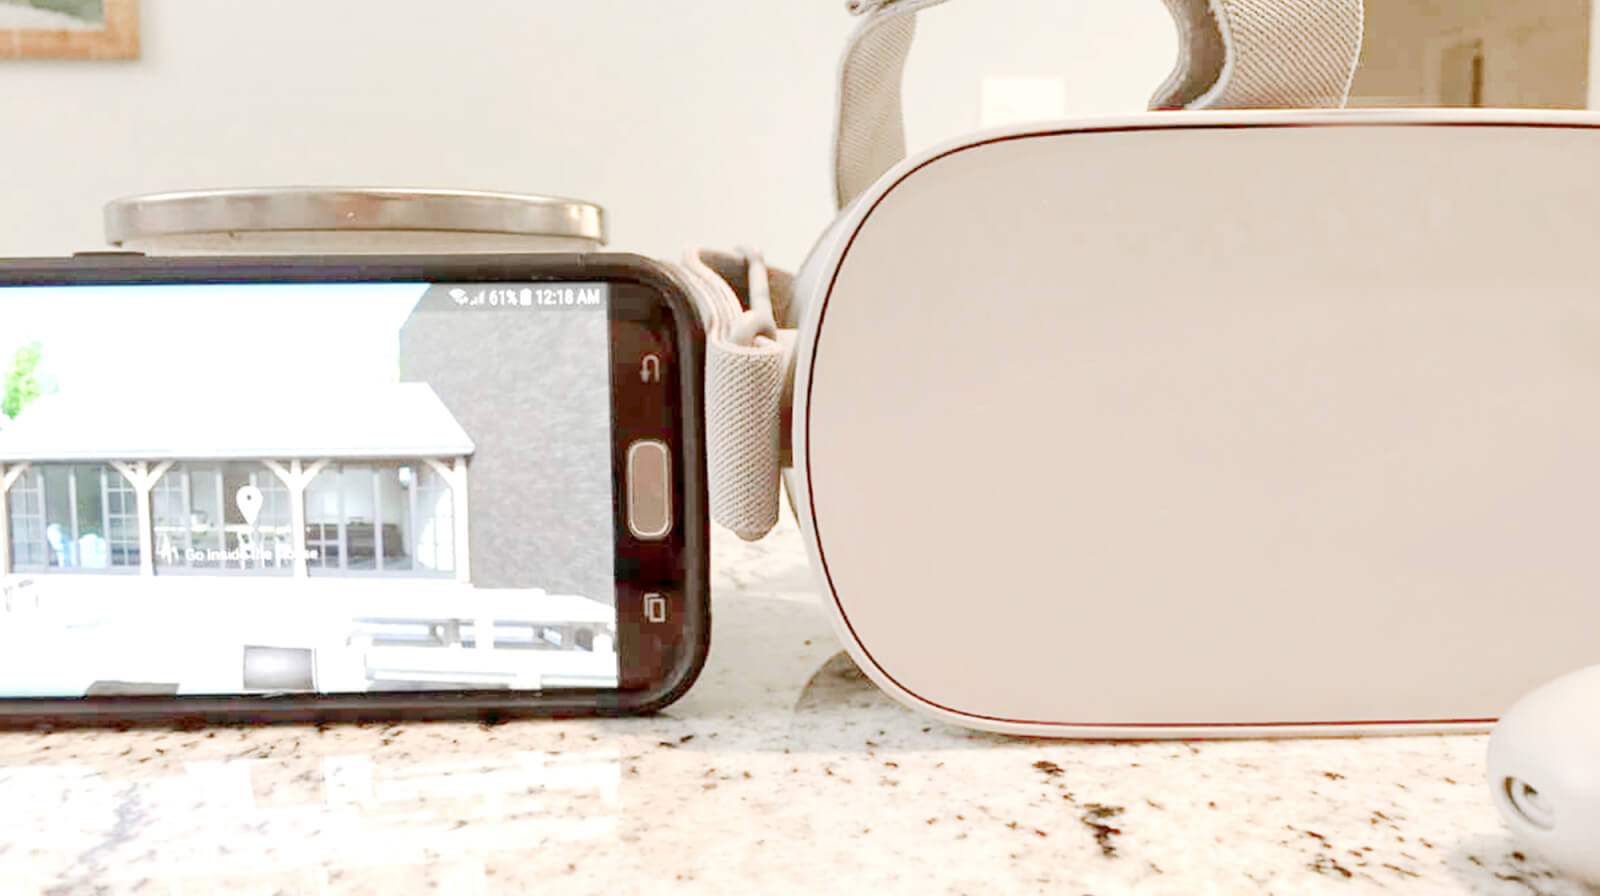 oculus go smartphone